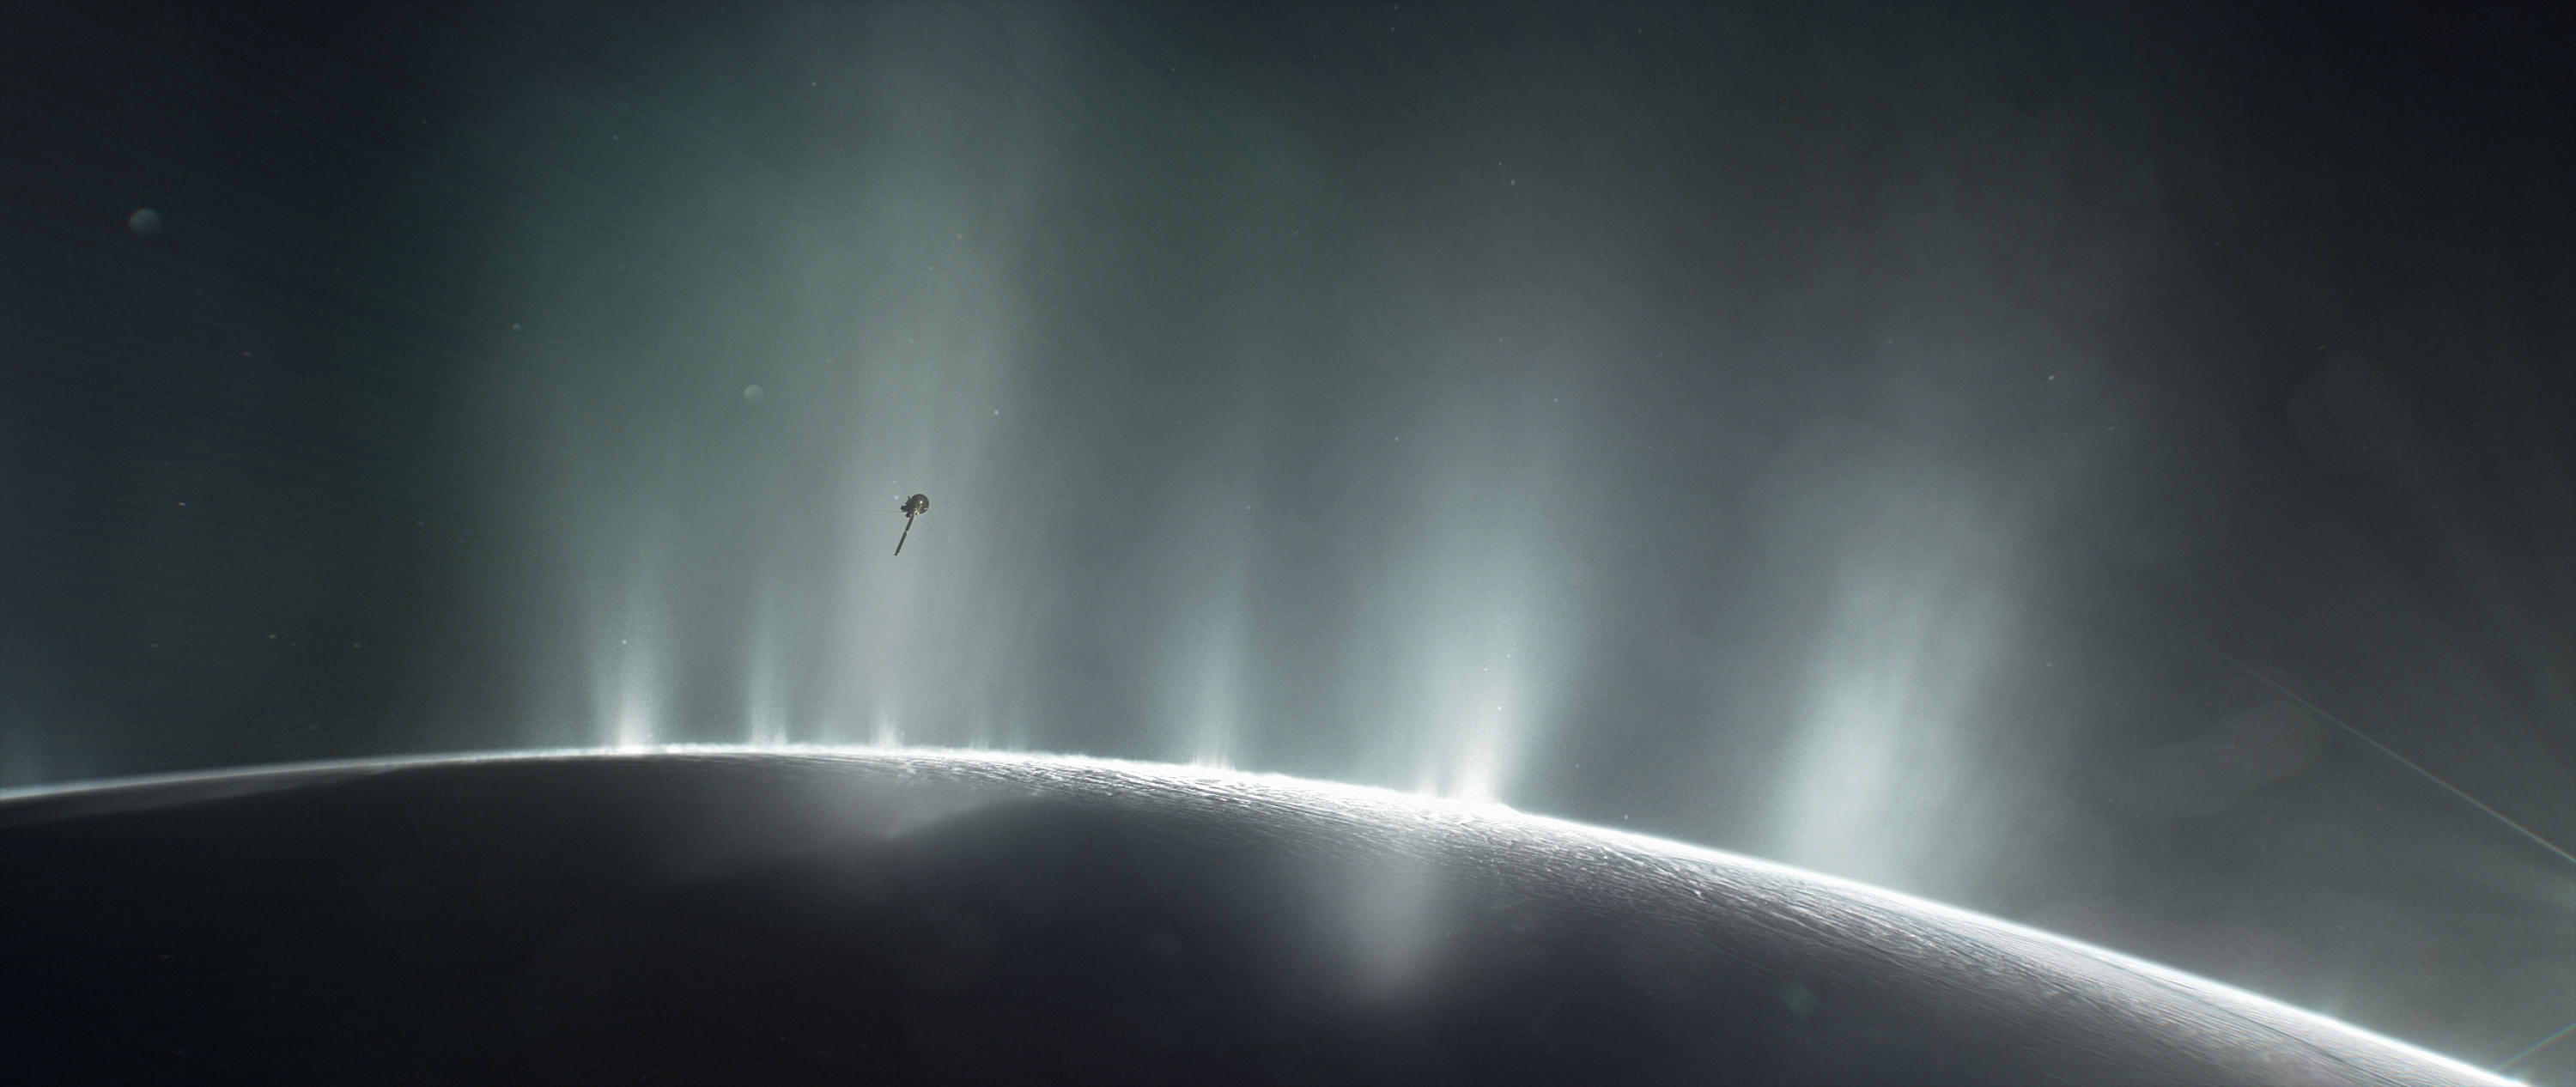 Une mission privée vers Encelade est à l'étude. Illustration de Cassini volant à travers les panaches du pôle sud d’Encelade. © Nasa, JPL-Caltech